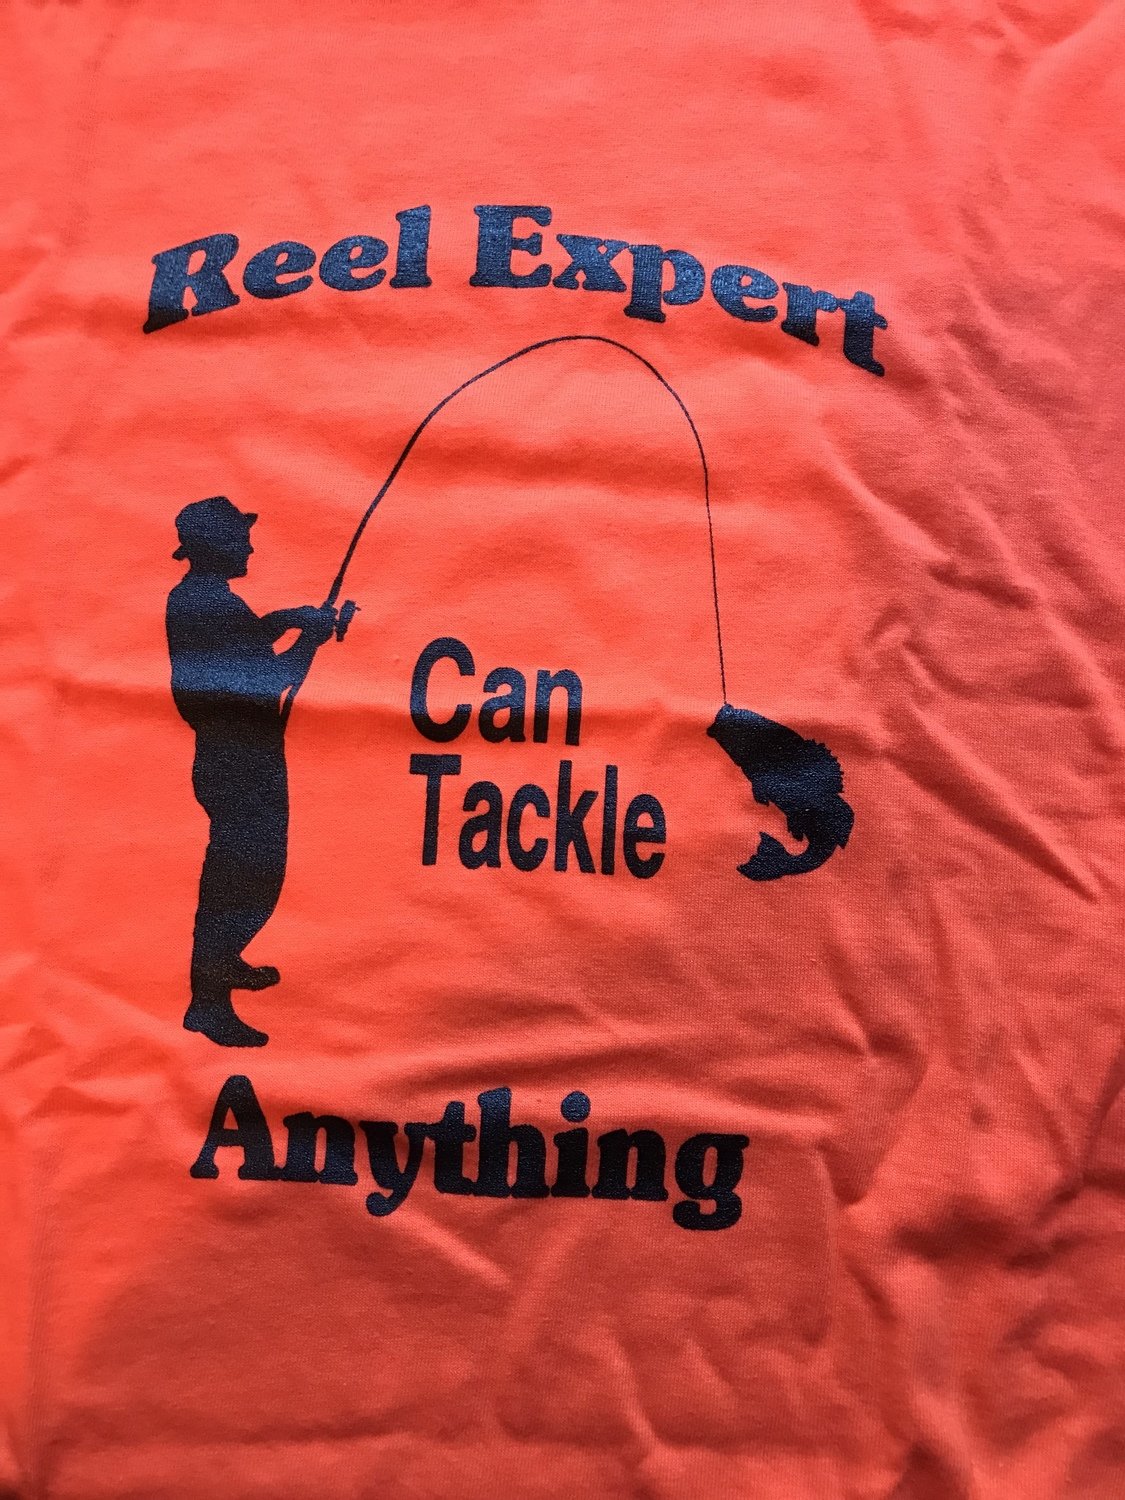 Reel Expert